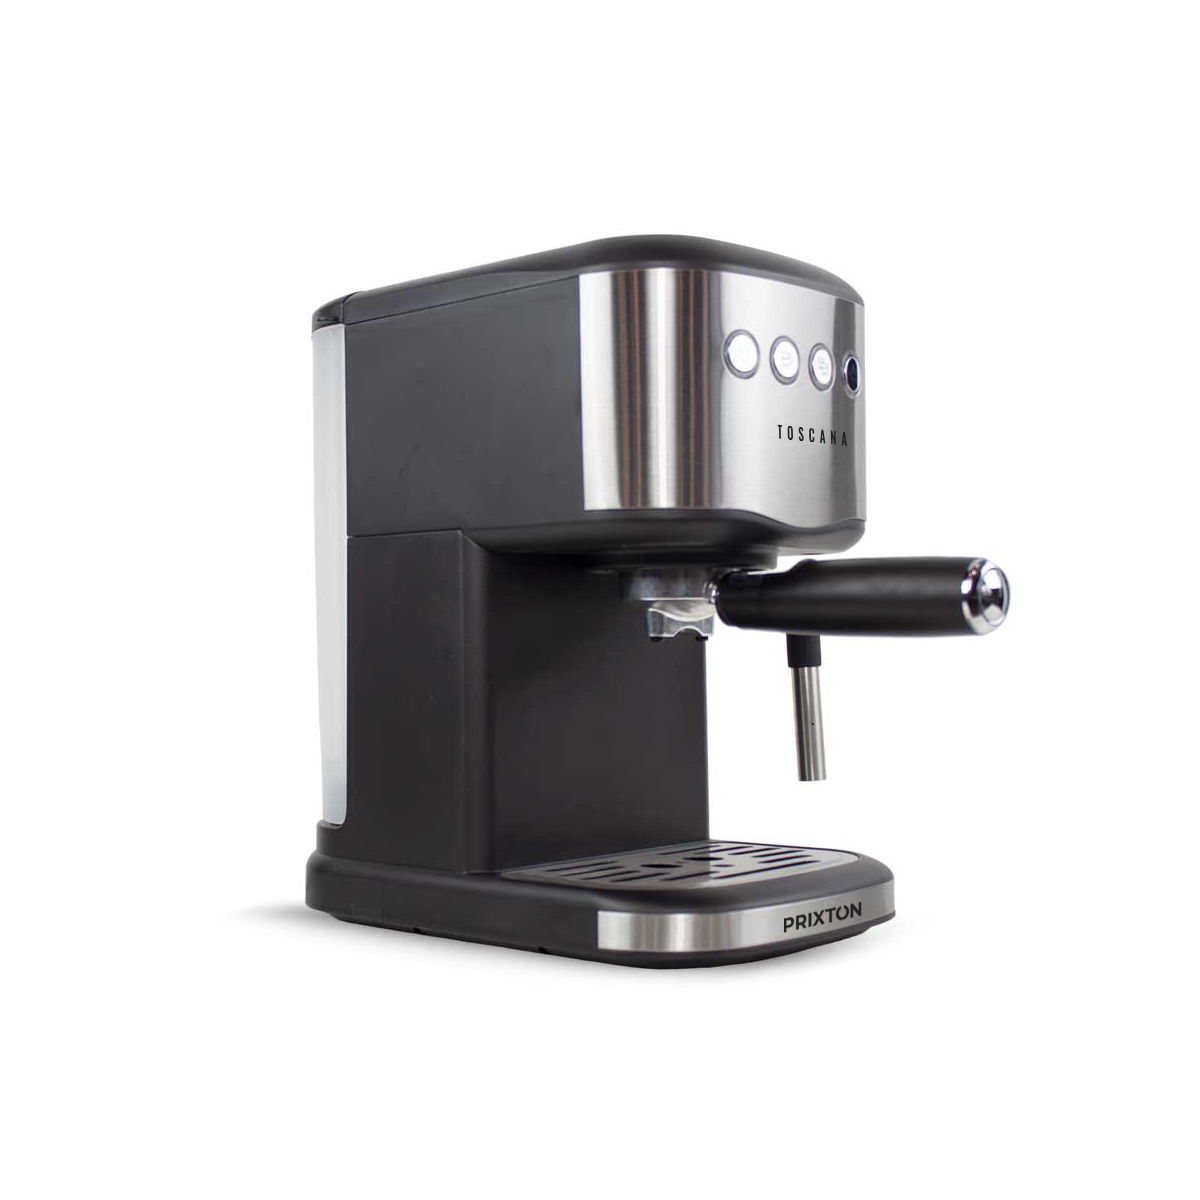 Automatic Espresso Machine Toscana - PRIXTON